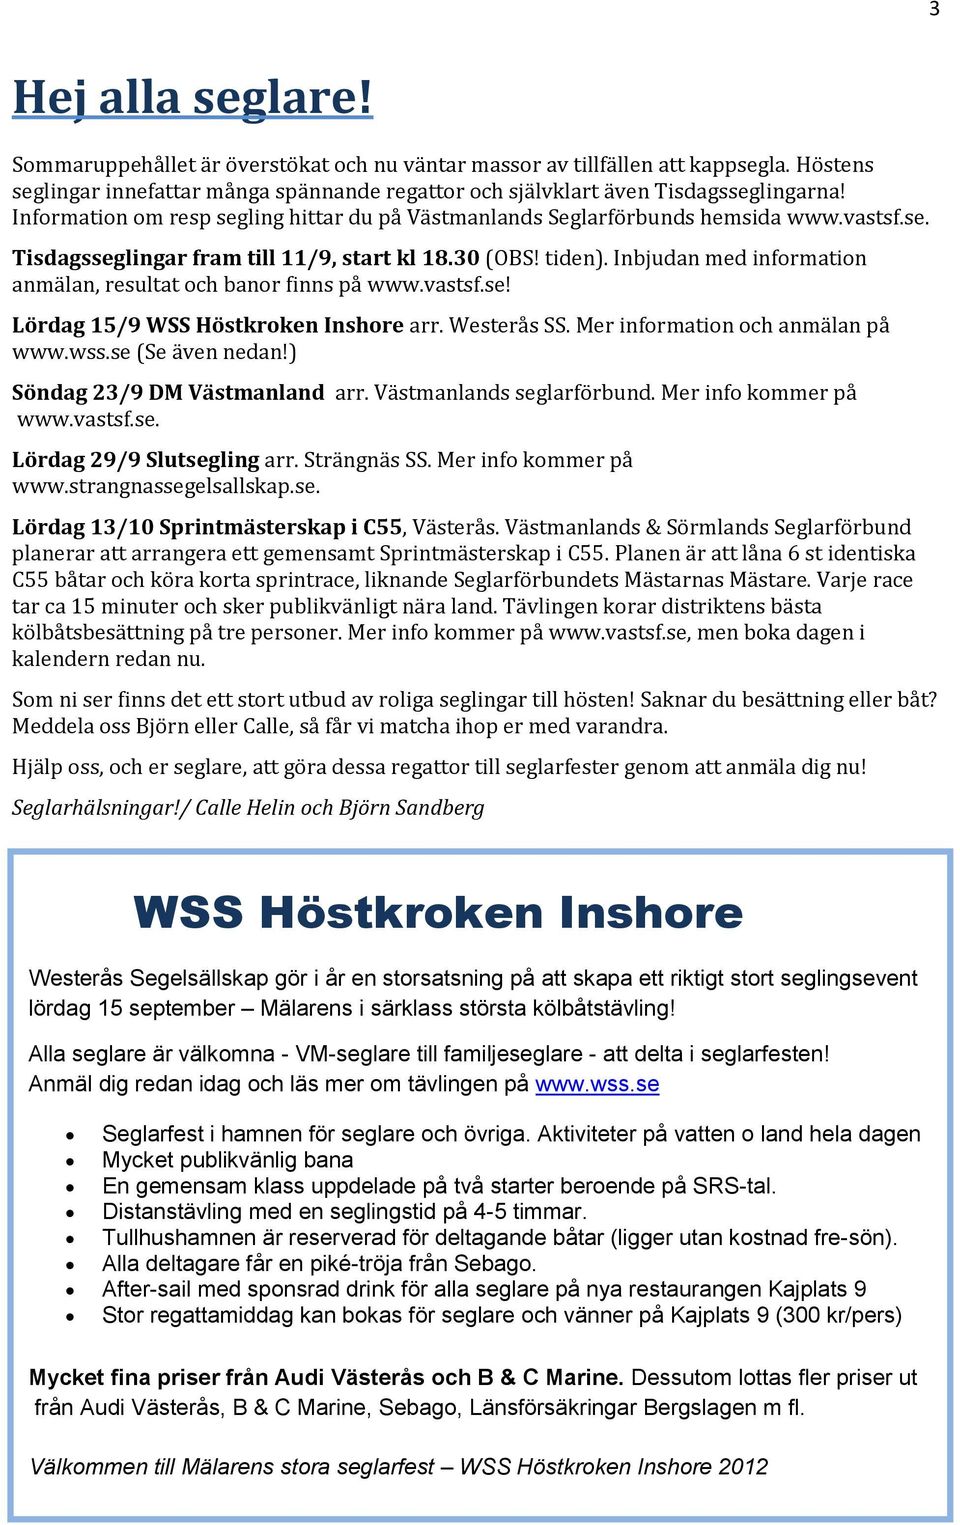 Inbjudan med information anmälan, resultat och banor finns på www.vastsf.se! Lördag 15/9 WSS Höstkroken Inshore arr. Westerås SS. Mer information och anmälan på www.wss.se (Se även nedan!